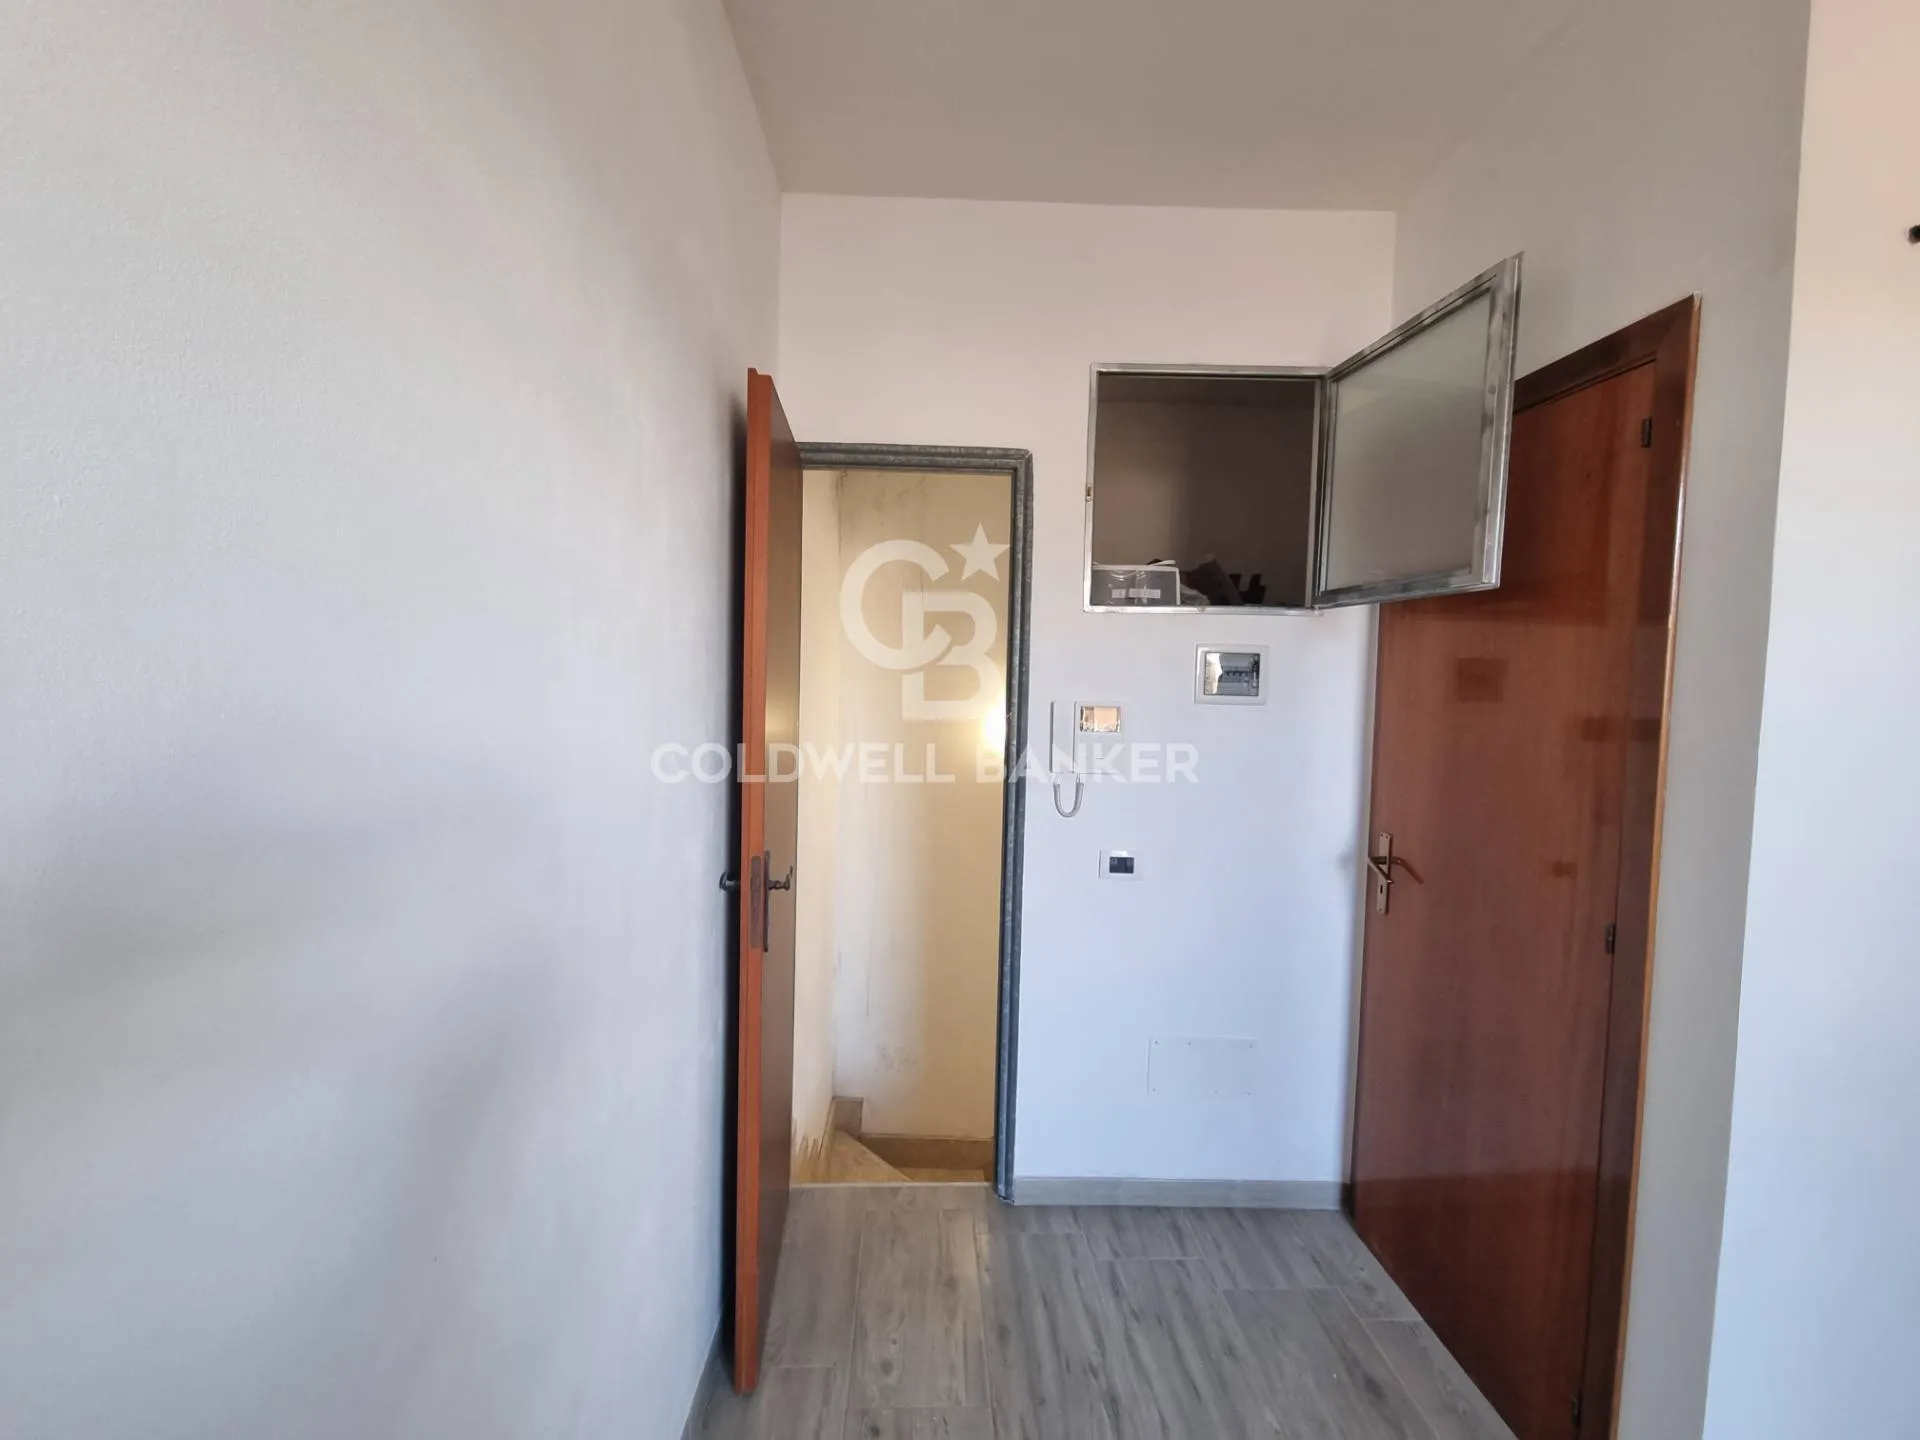 Immagine per Appartamento in vendita a Avola via ugo foscolo